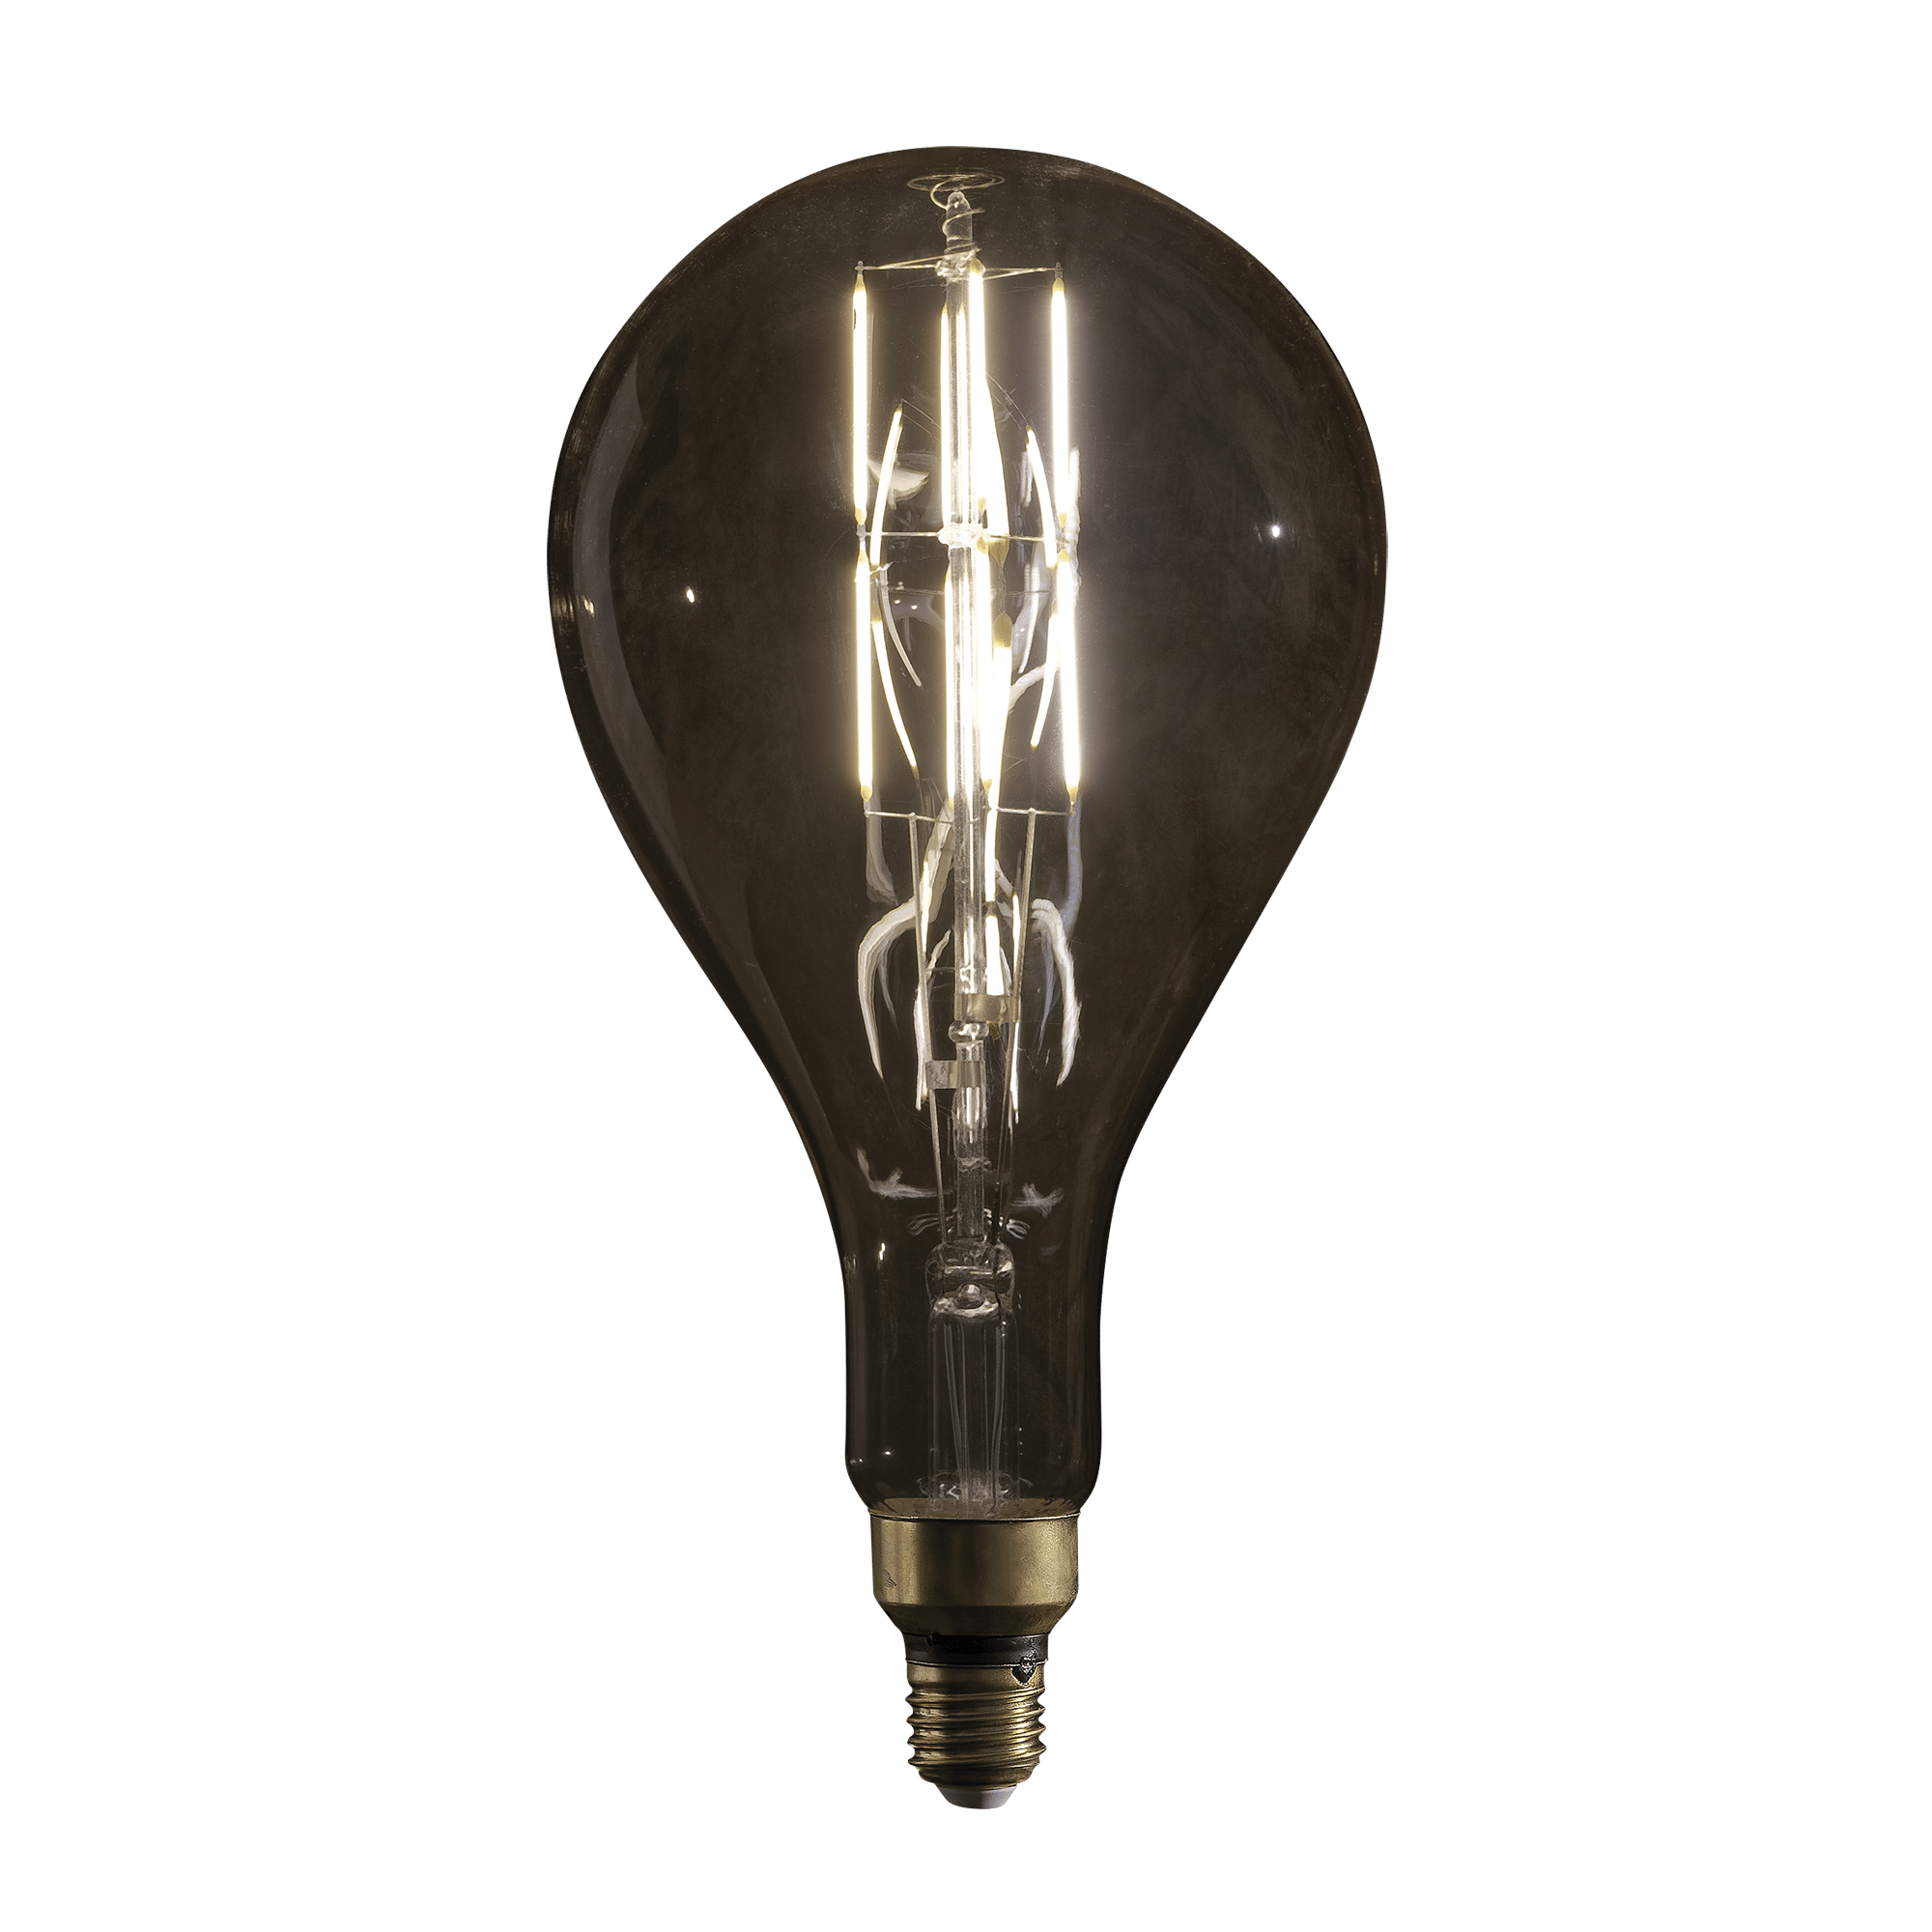 LED Filament Bulb PS52 - Onlinediscowinkel.nl